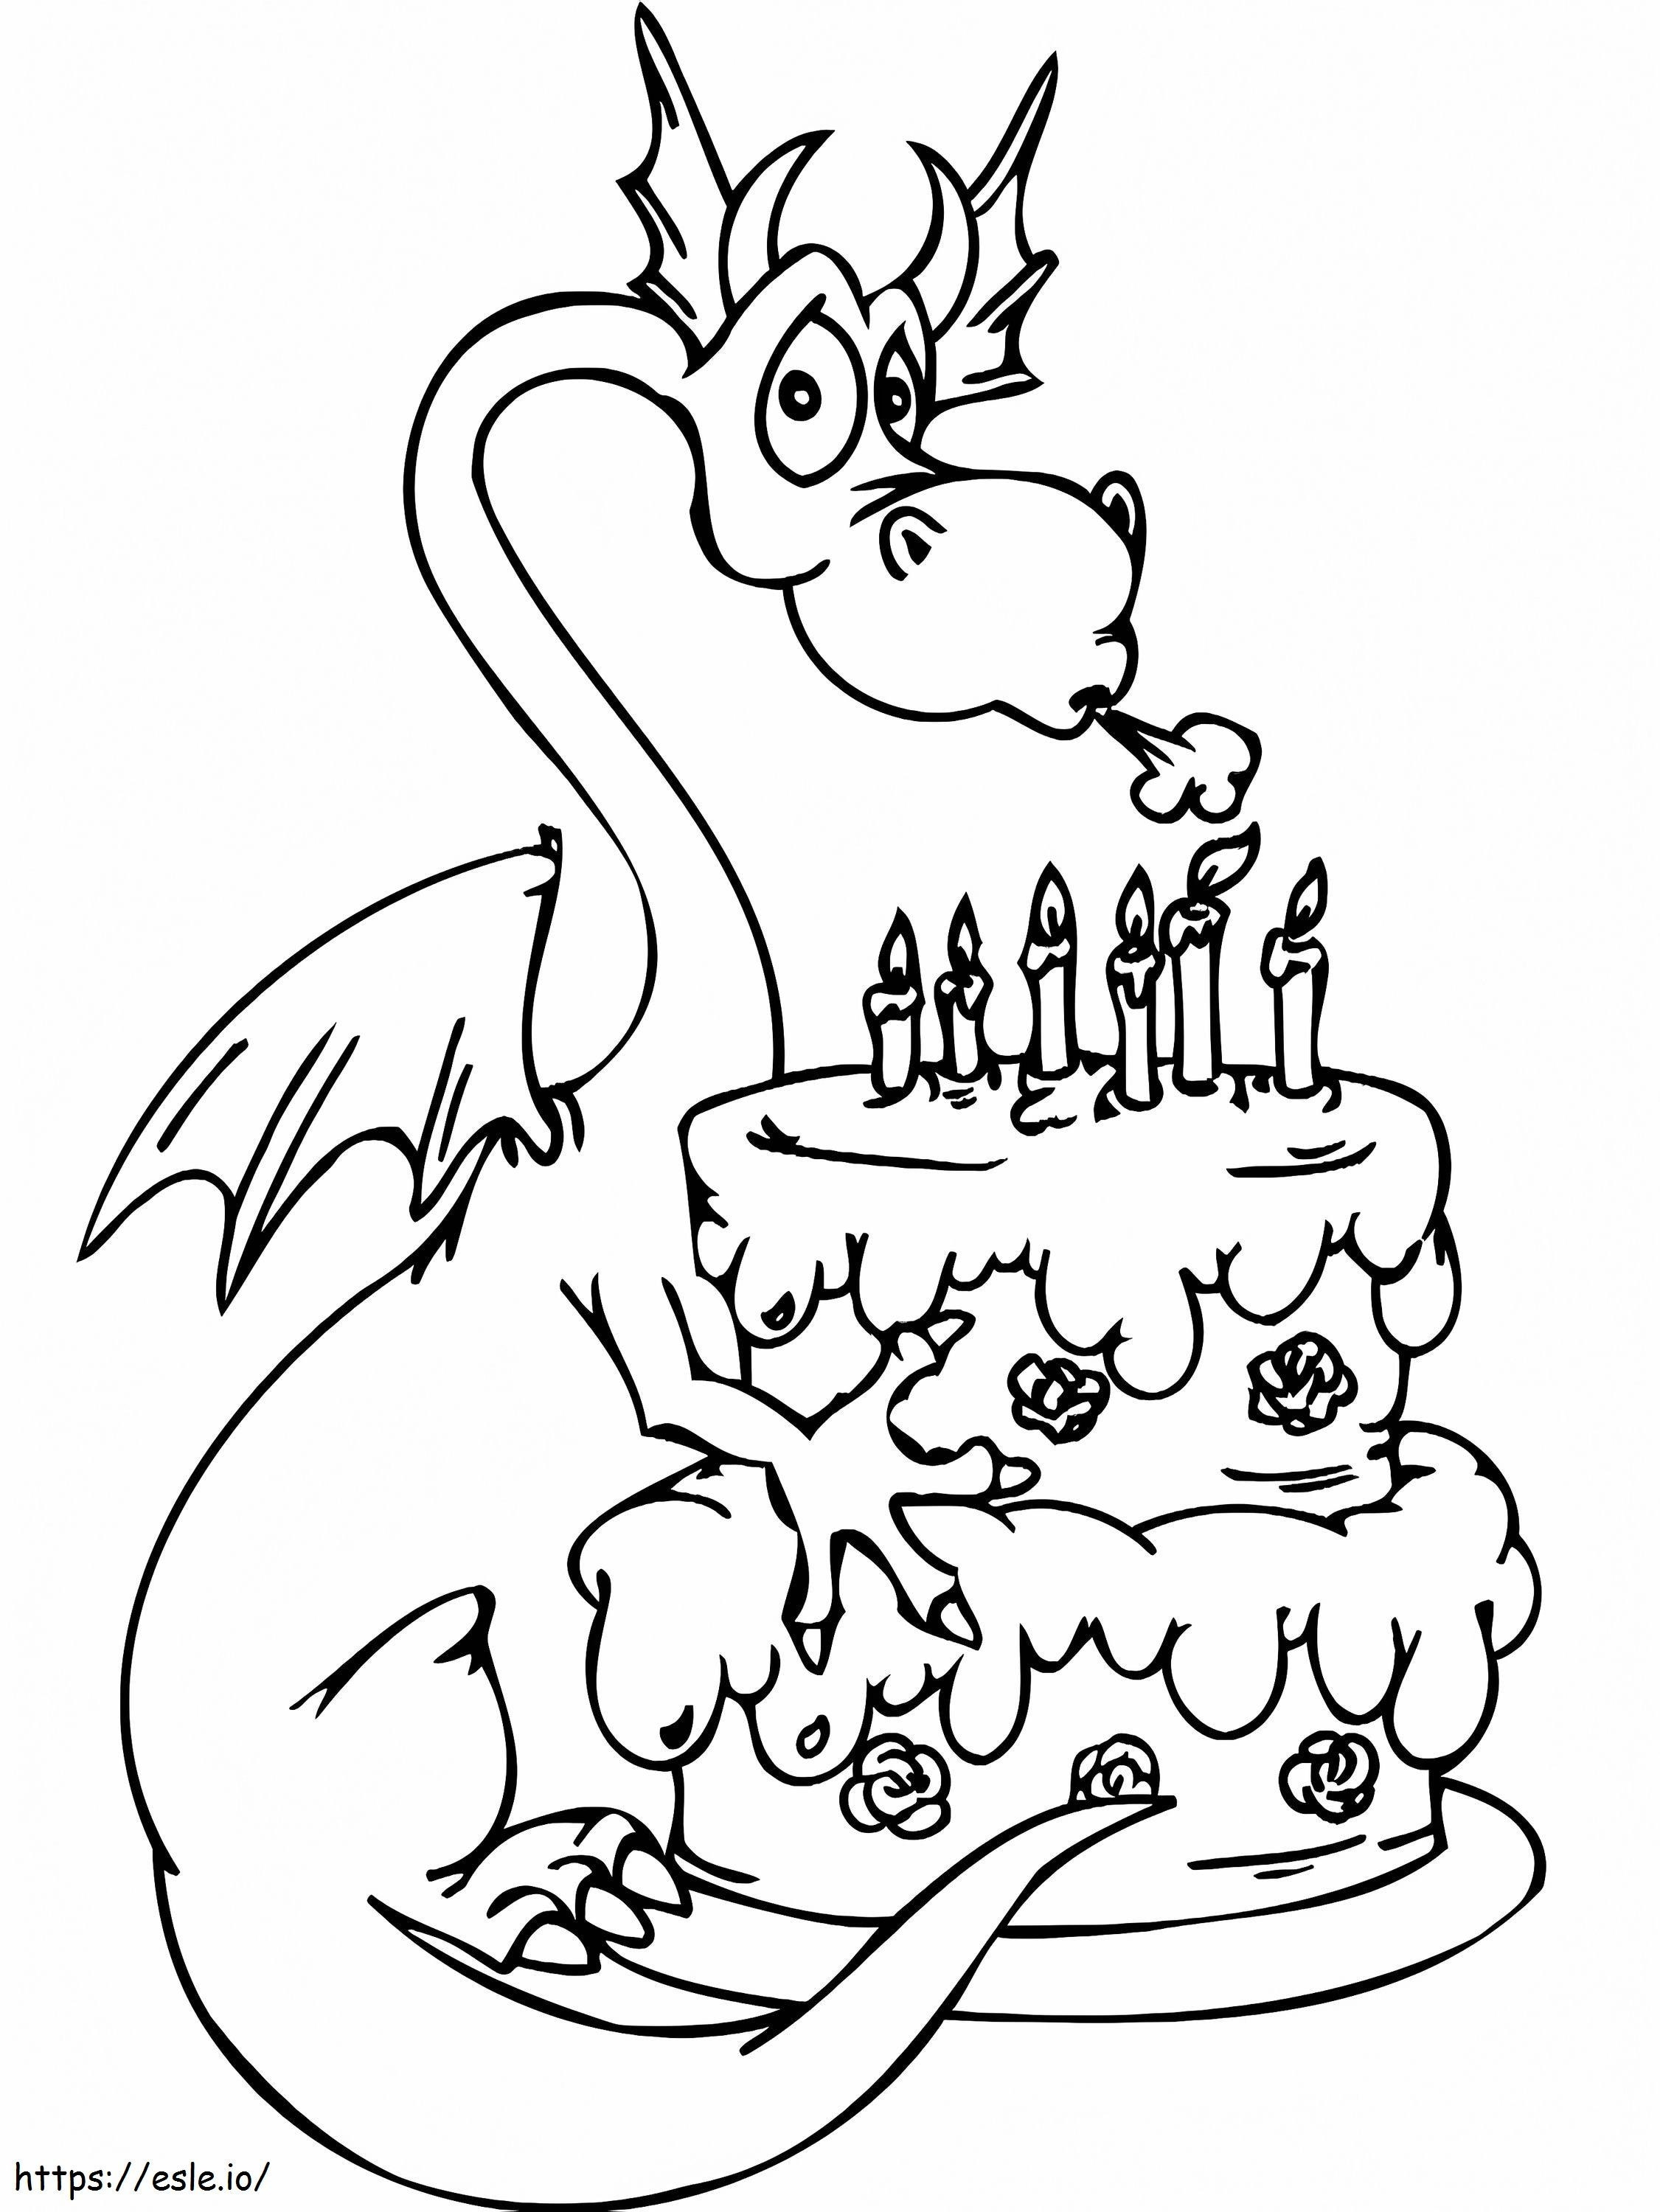  Geburtstage zum Ausmalen C0Lorcom Cake Happy Birthday Party ausmalbilder